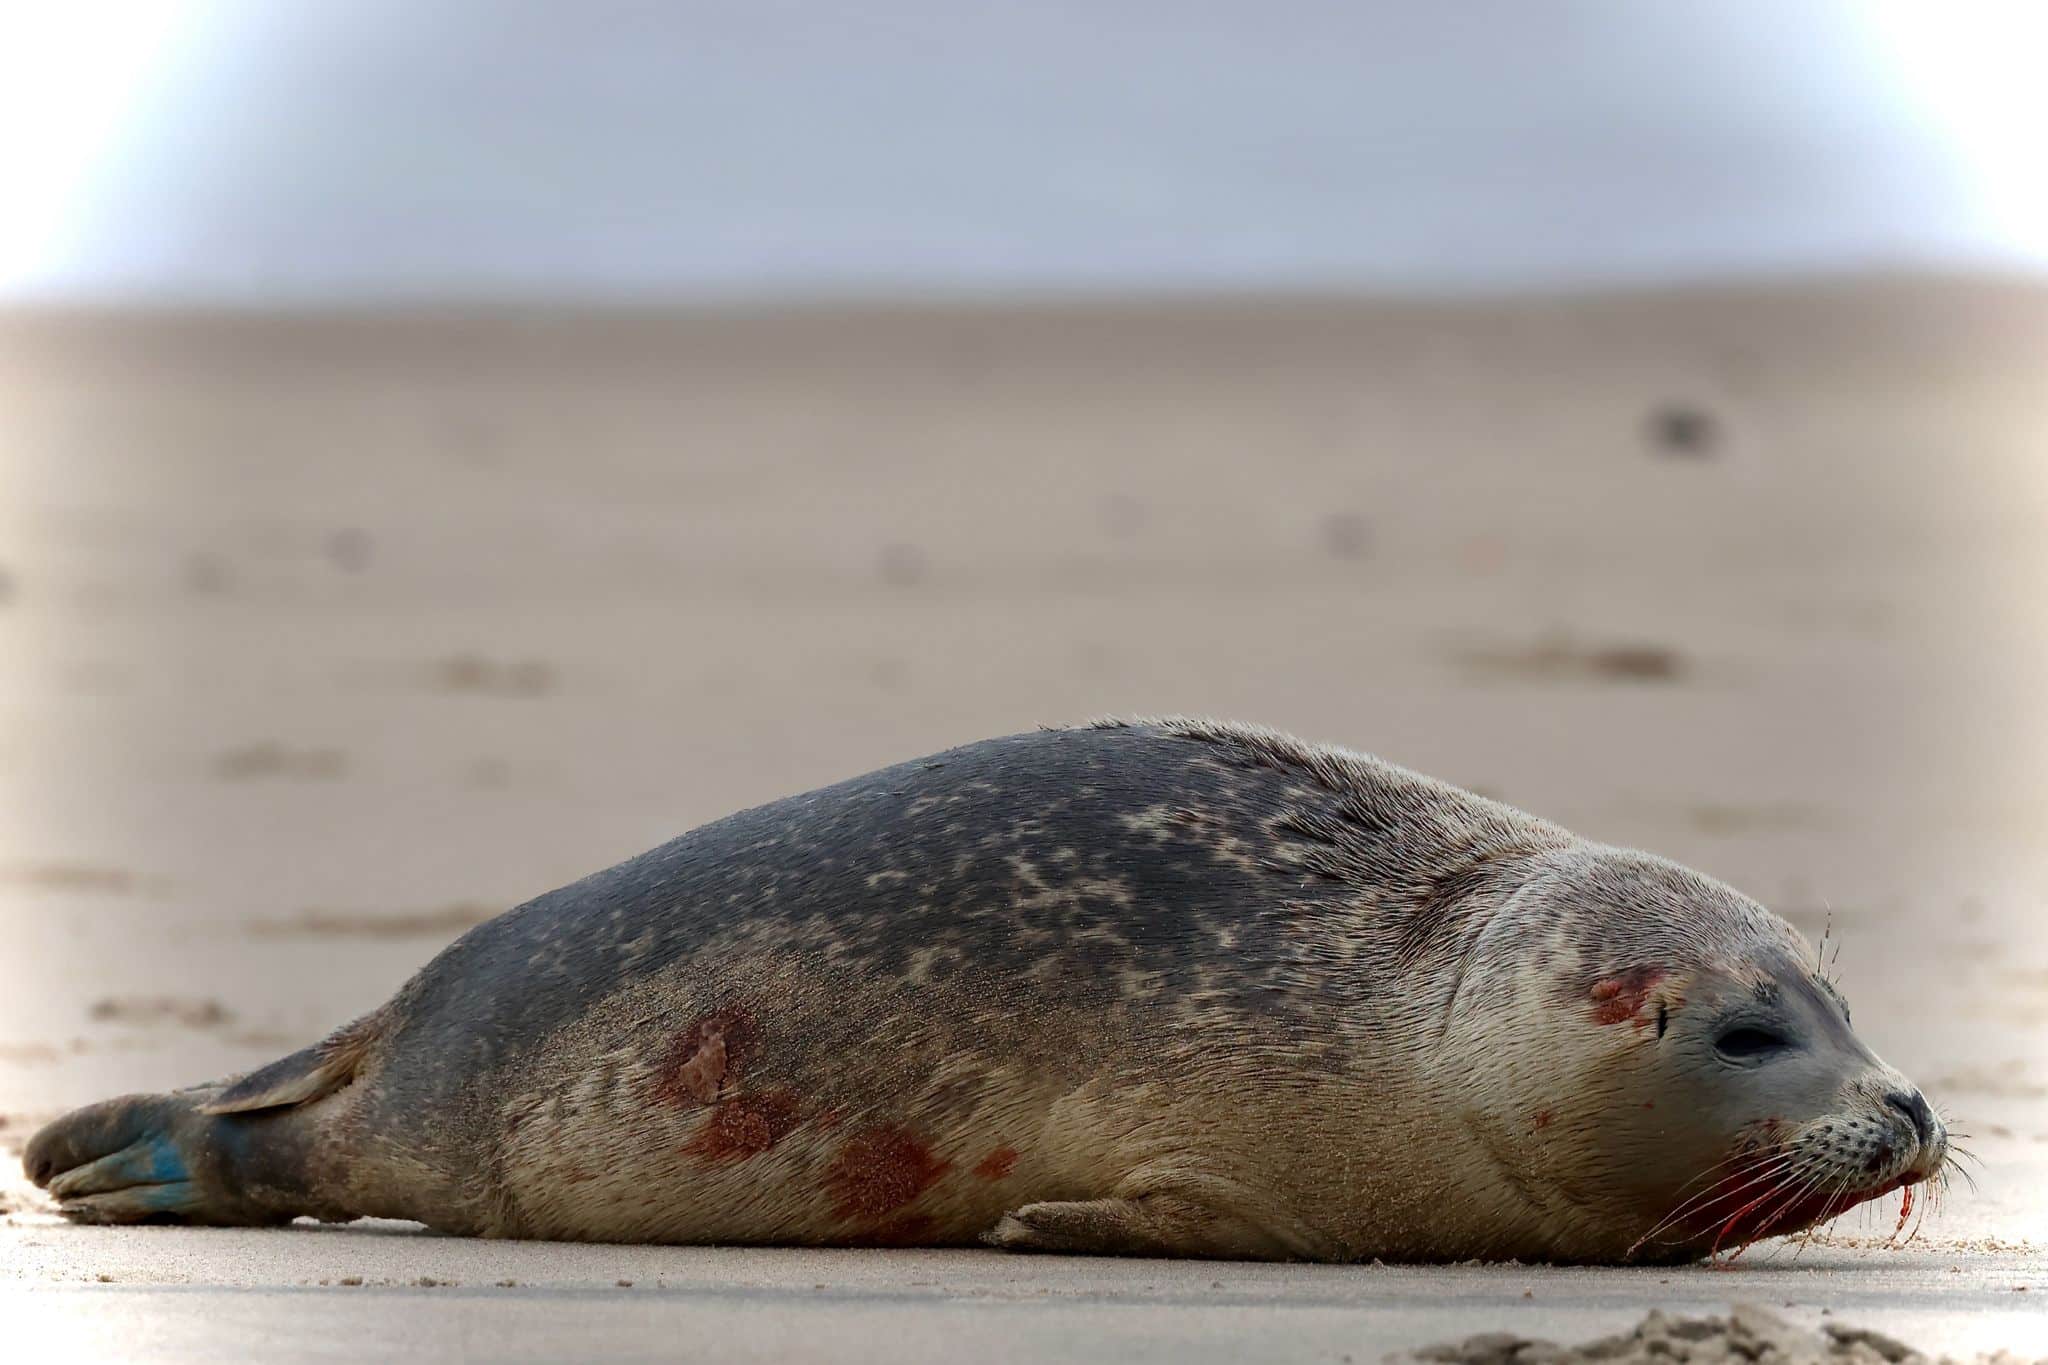 Zeehond zwaar toegetakeld op het strand van Wenduine, vzw NorthSealTeam trekt aan de alarmbel